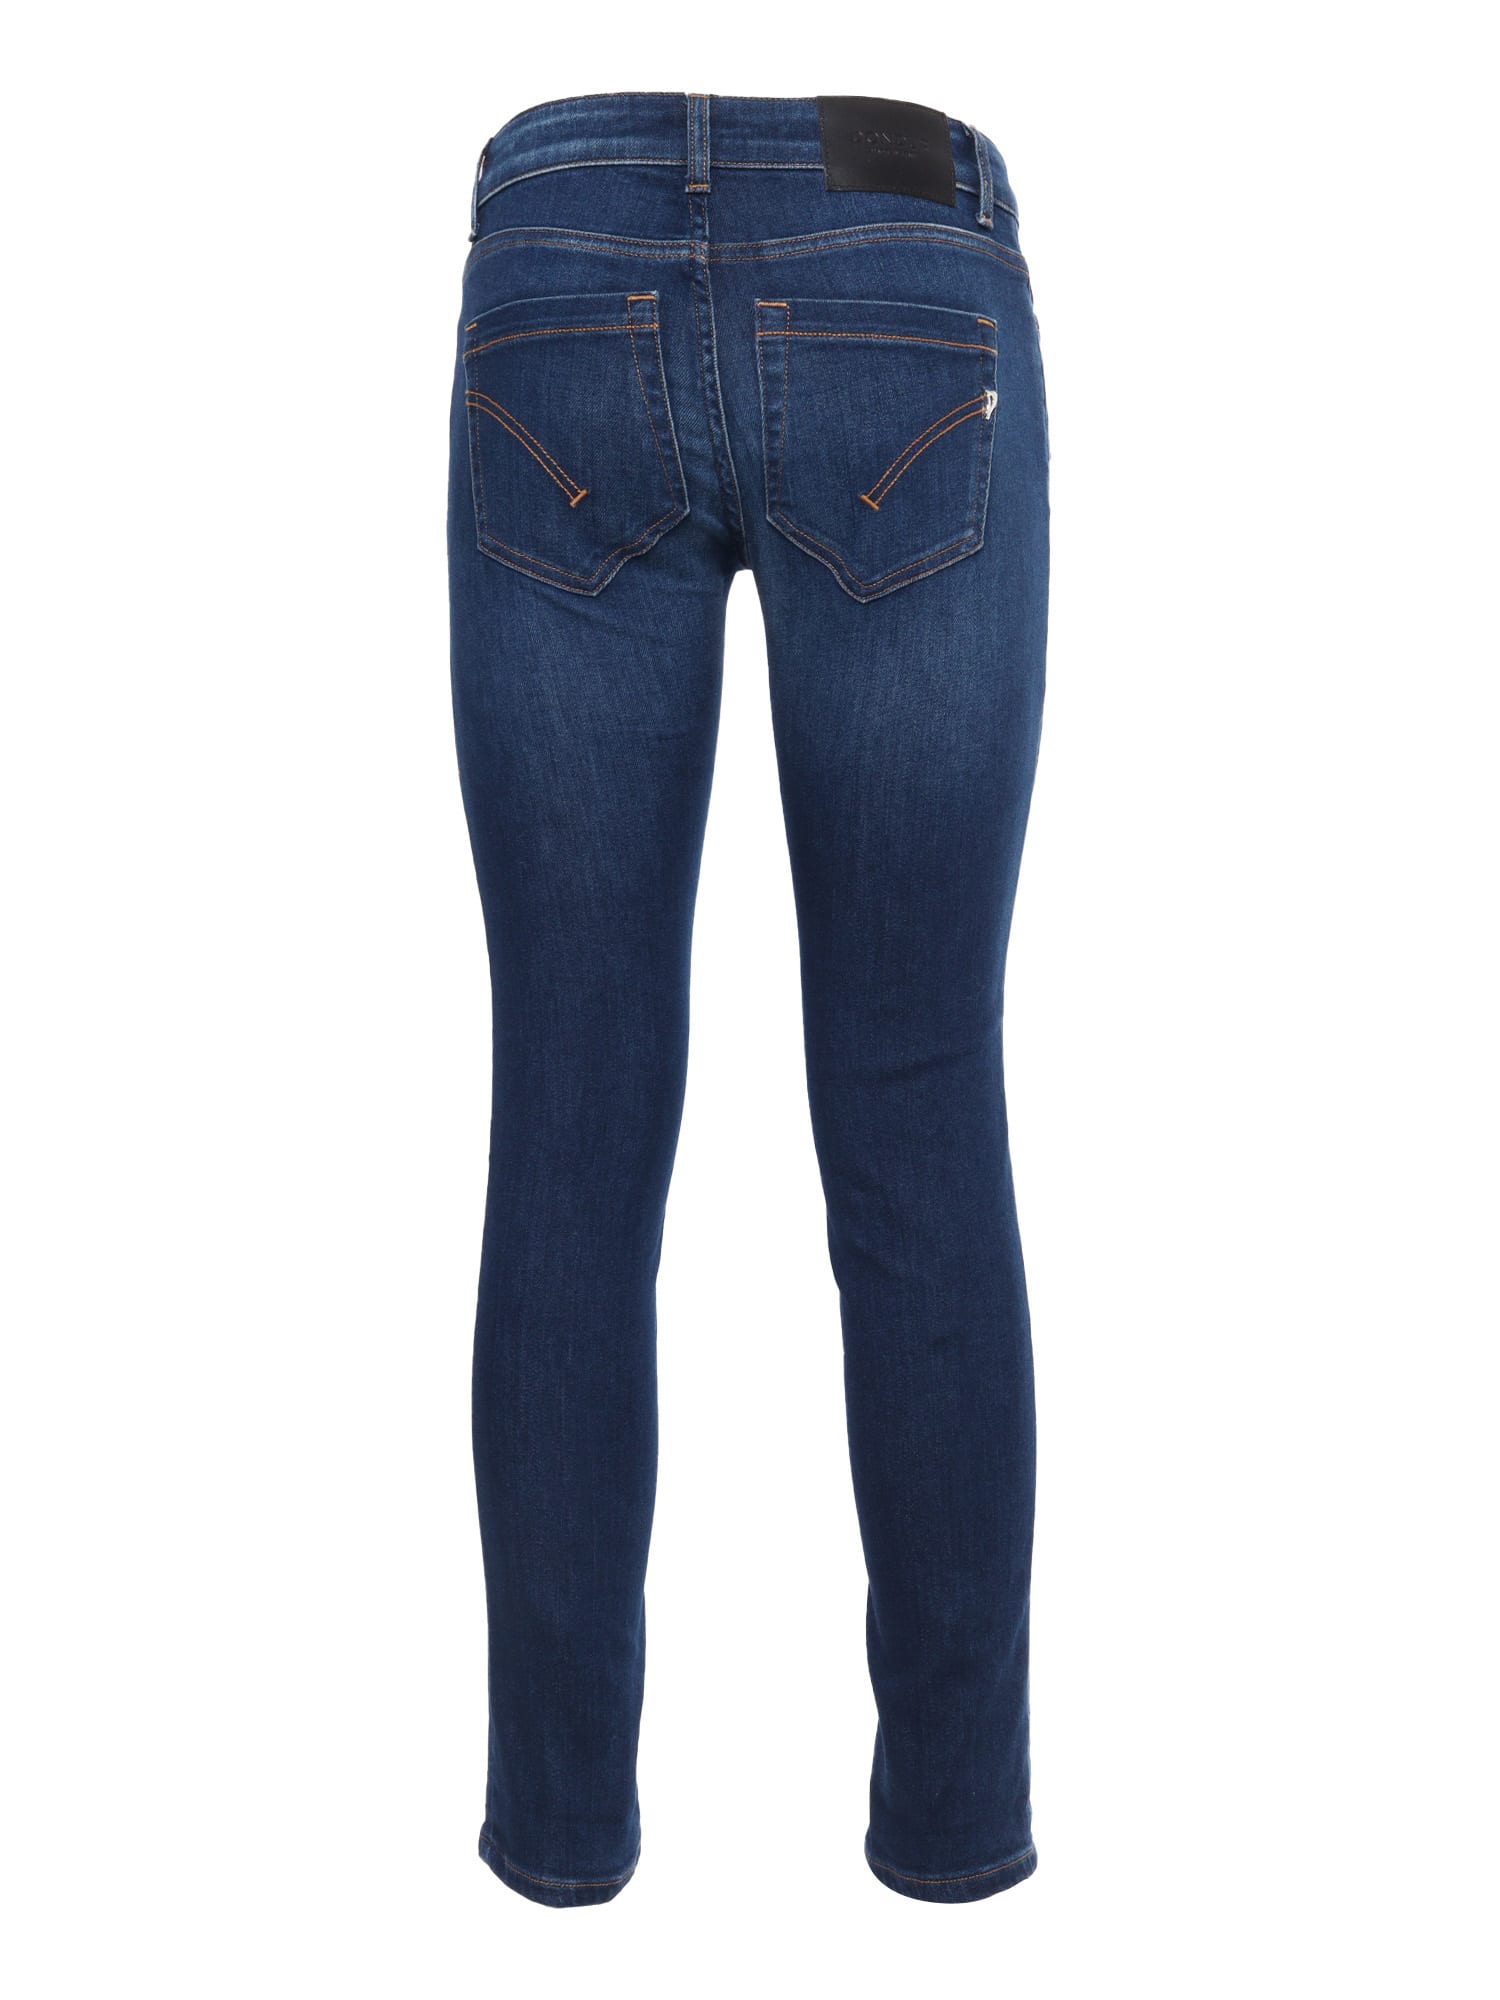 Shop Dondup Blue Skinny Jeans